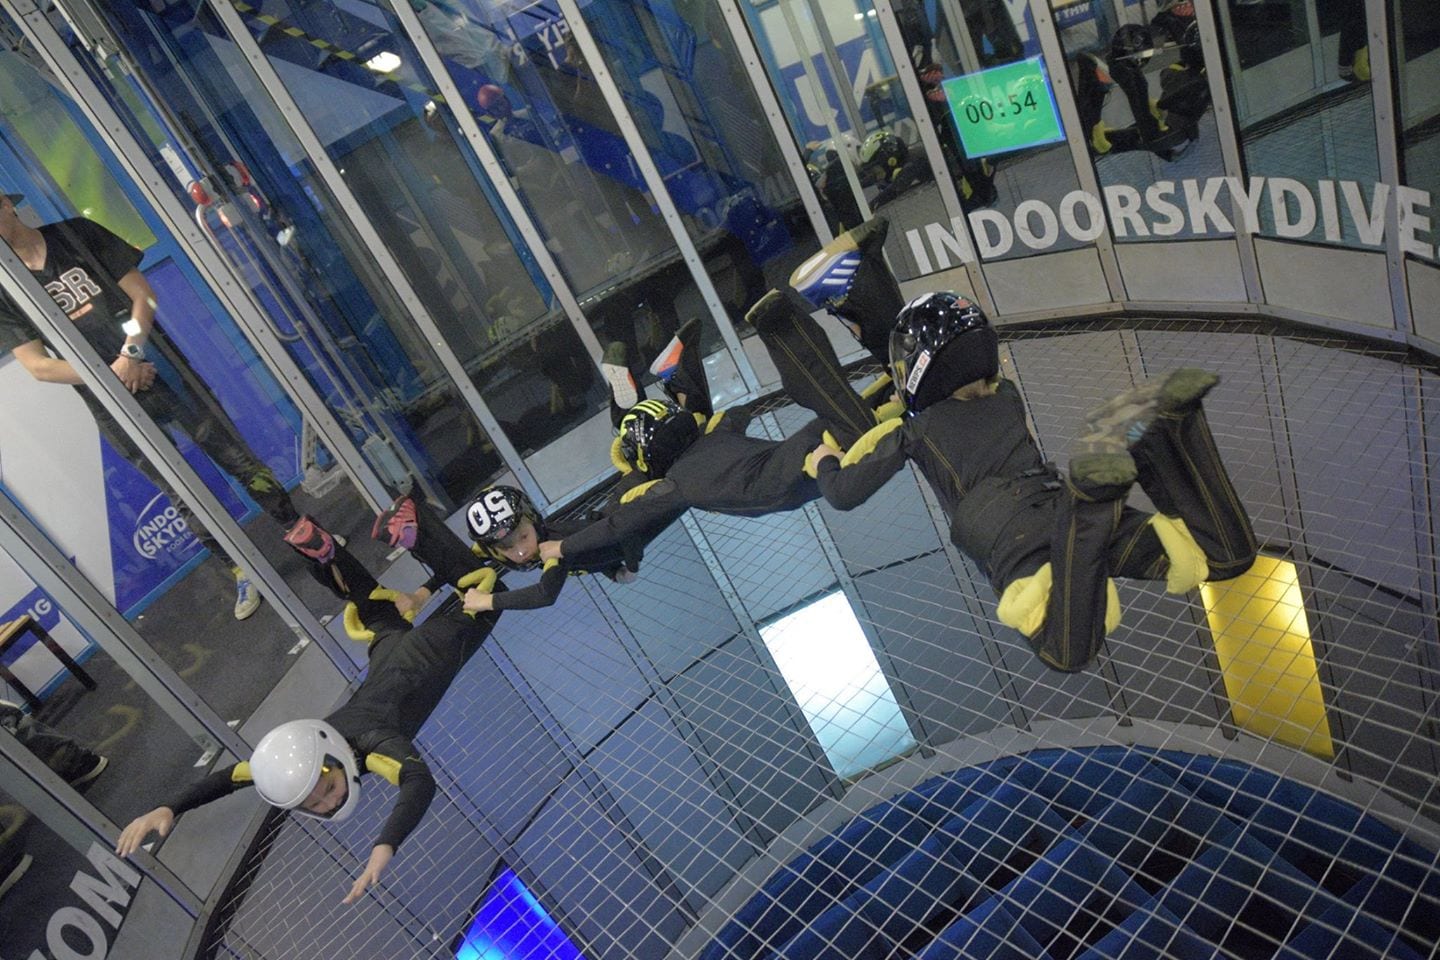 Indoor Skydive event